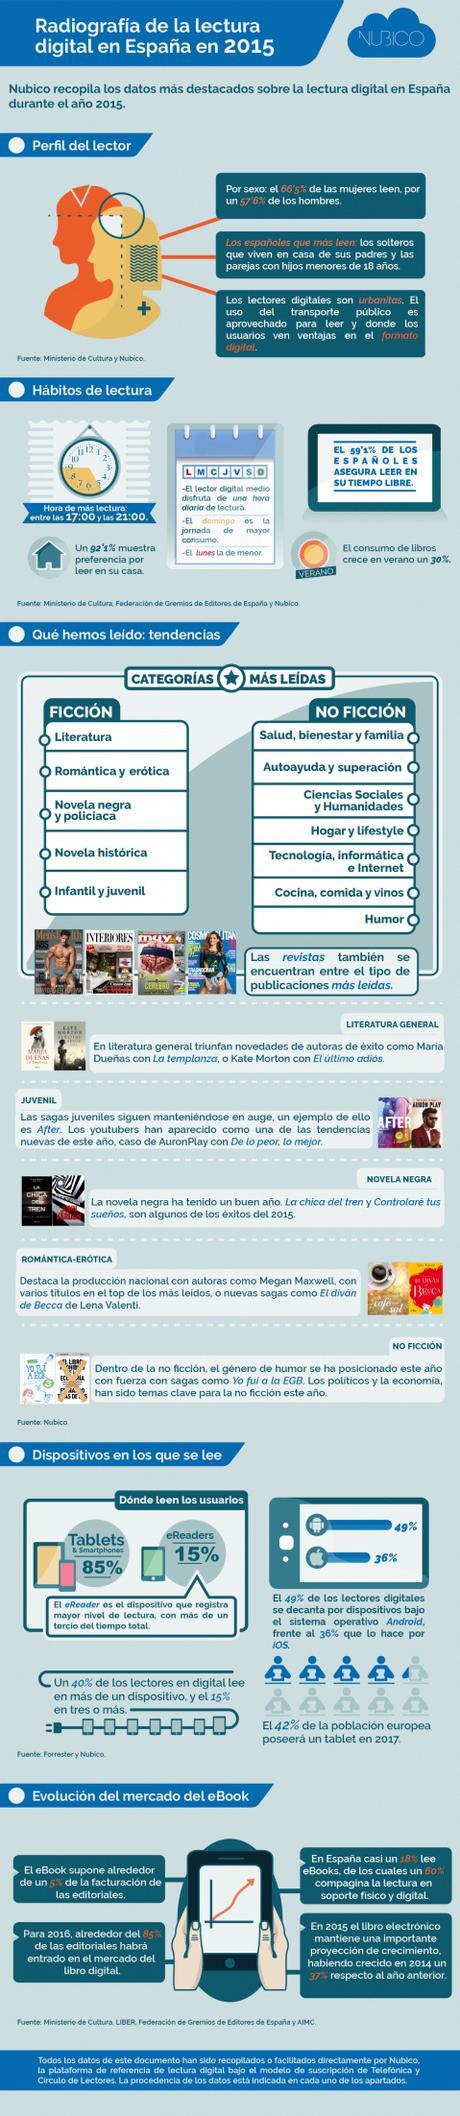 (alta)Radiografía-de-la-lectura-digital-en-España-en-2015